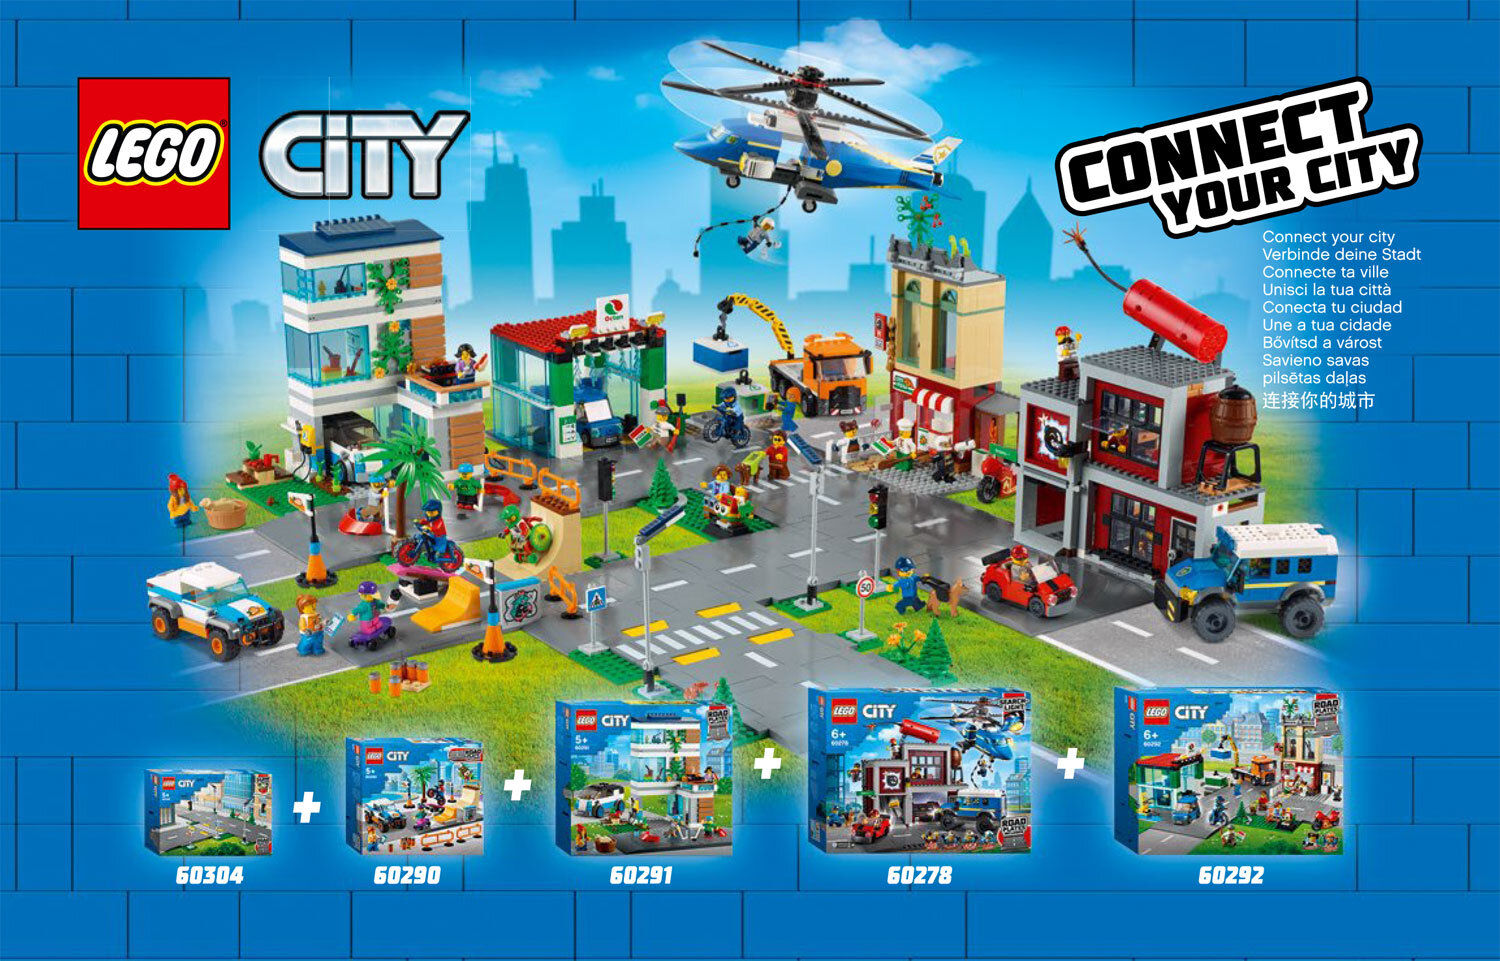 LEGO City 60278 Crooks' Hideout encore une boite avec le nouveau